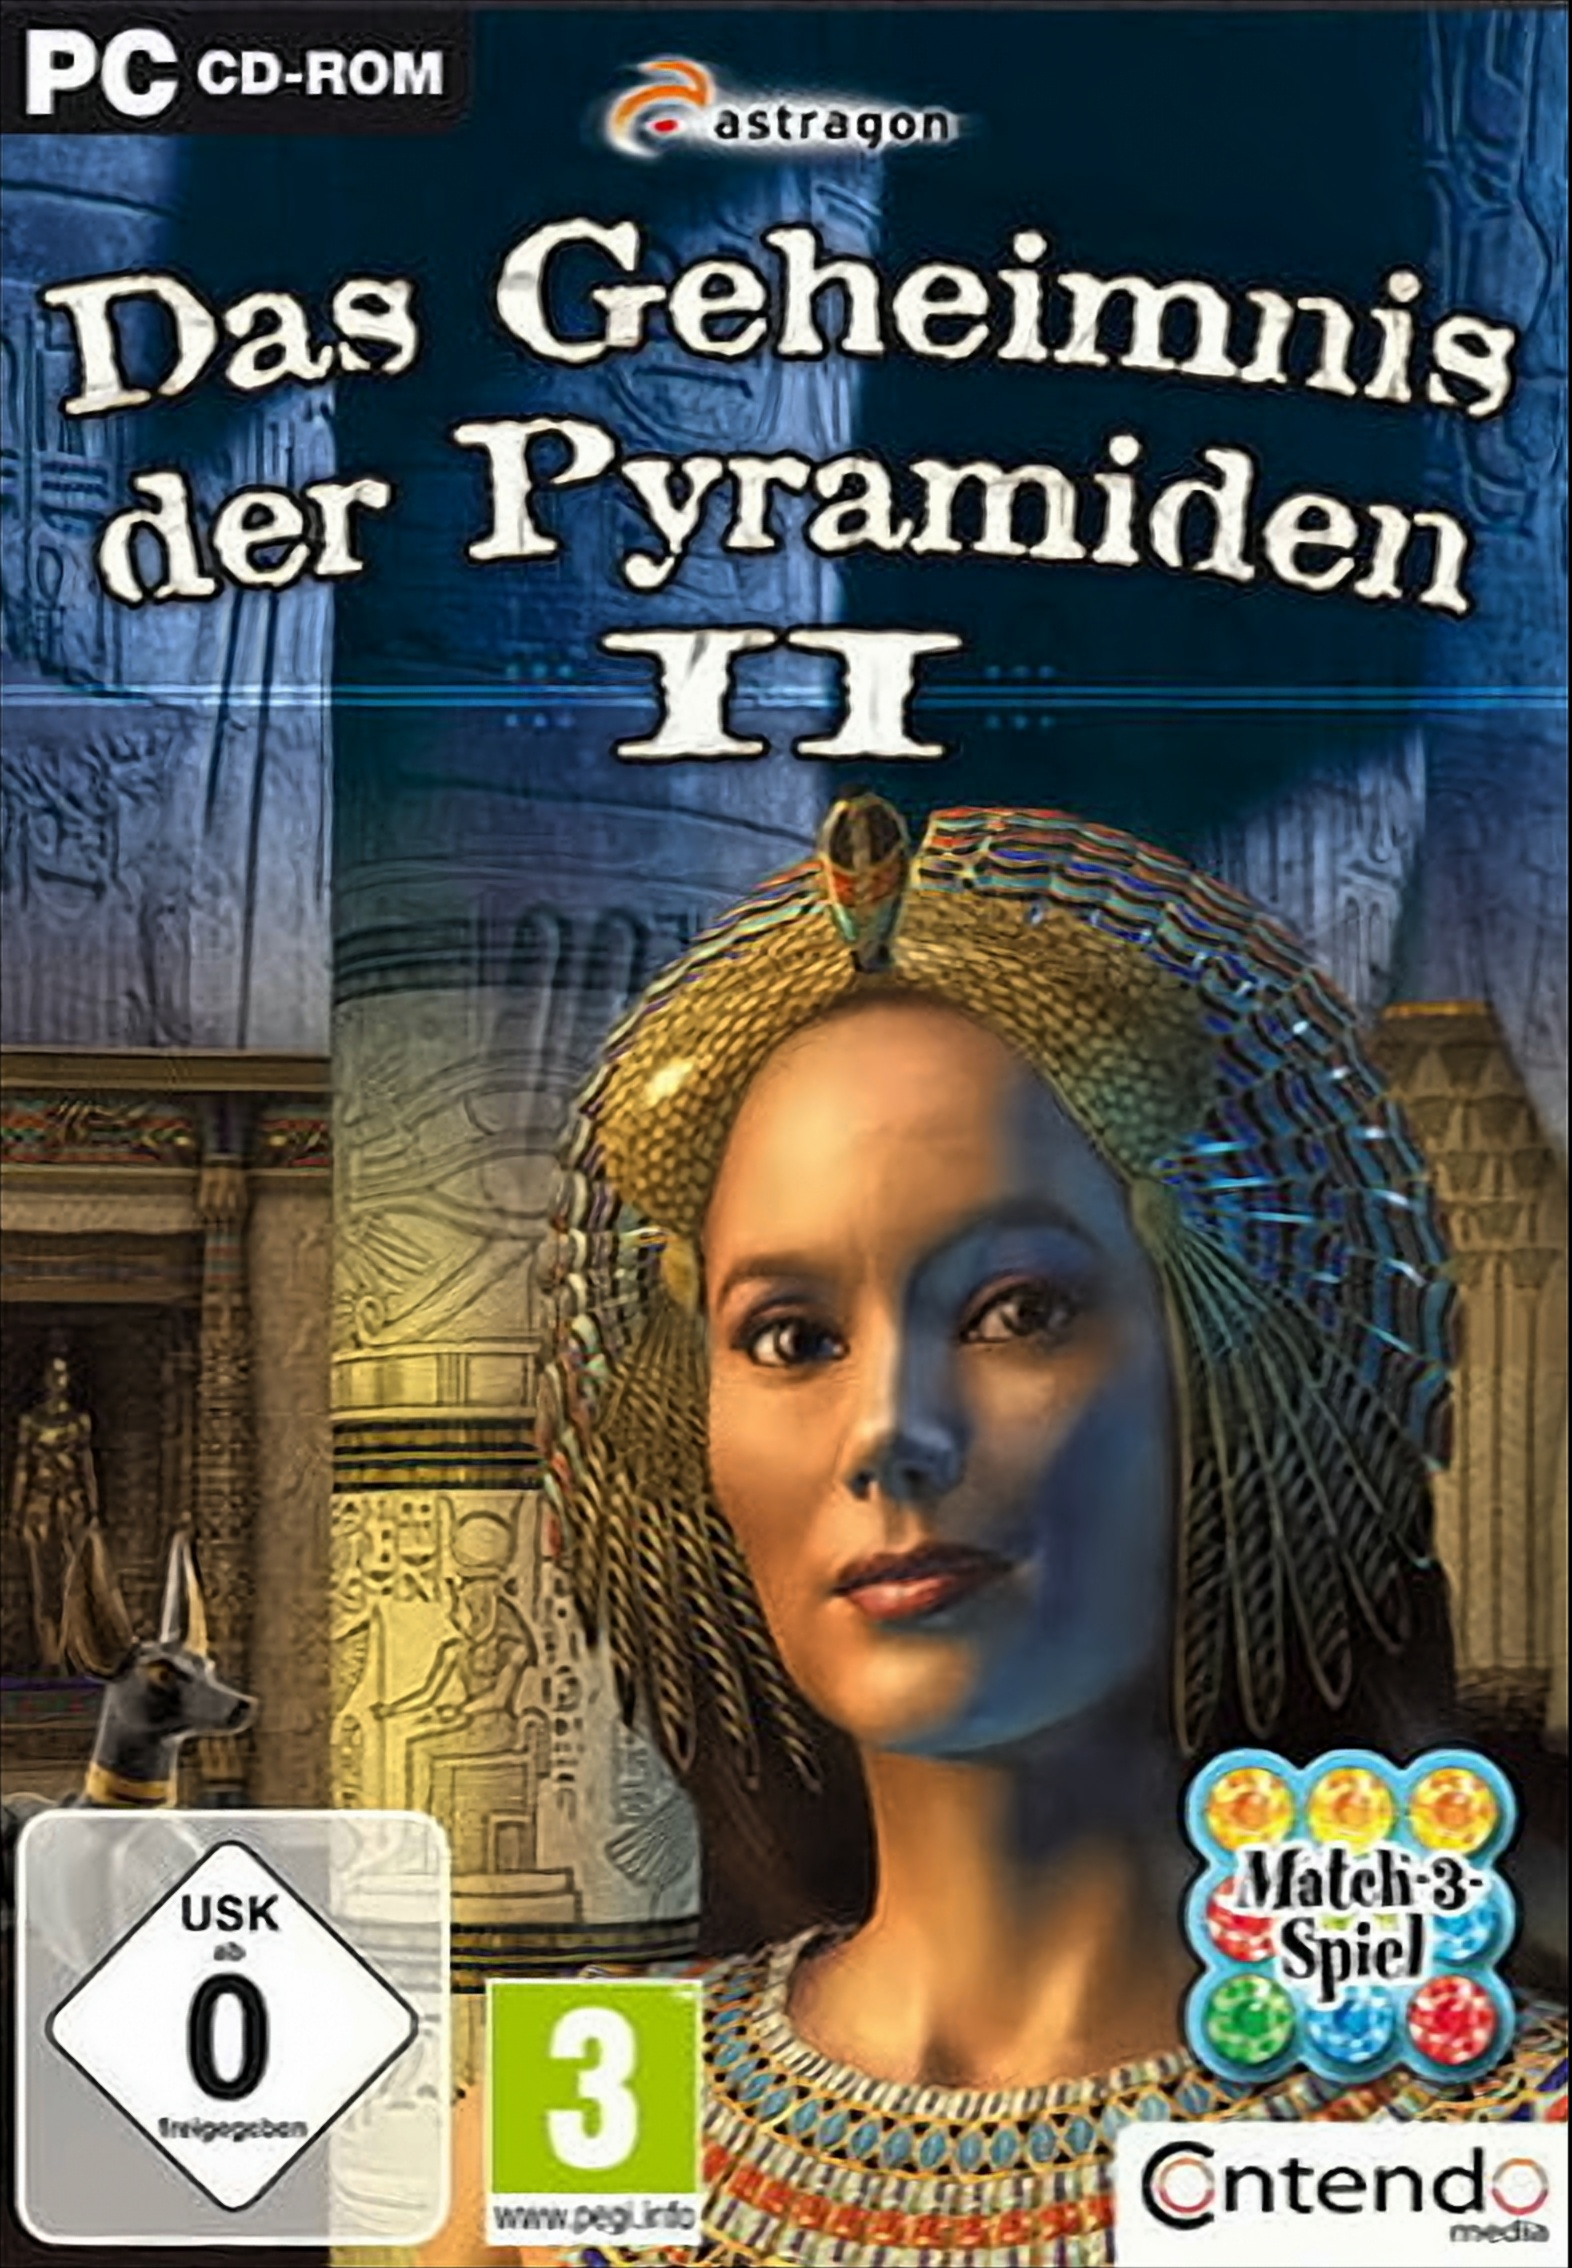 [PC] Das der - Geheimnis Pyramiden II